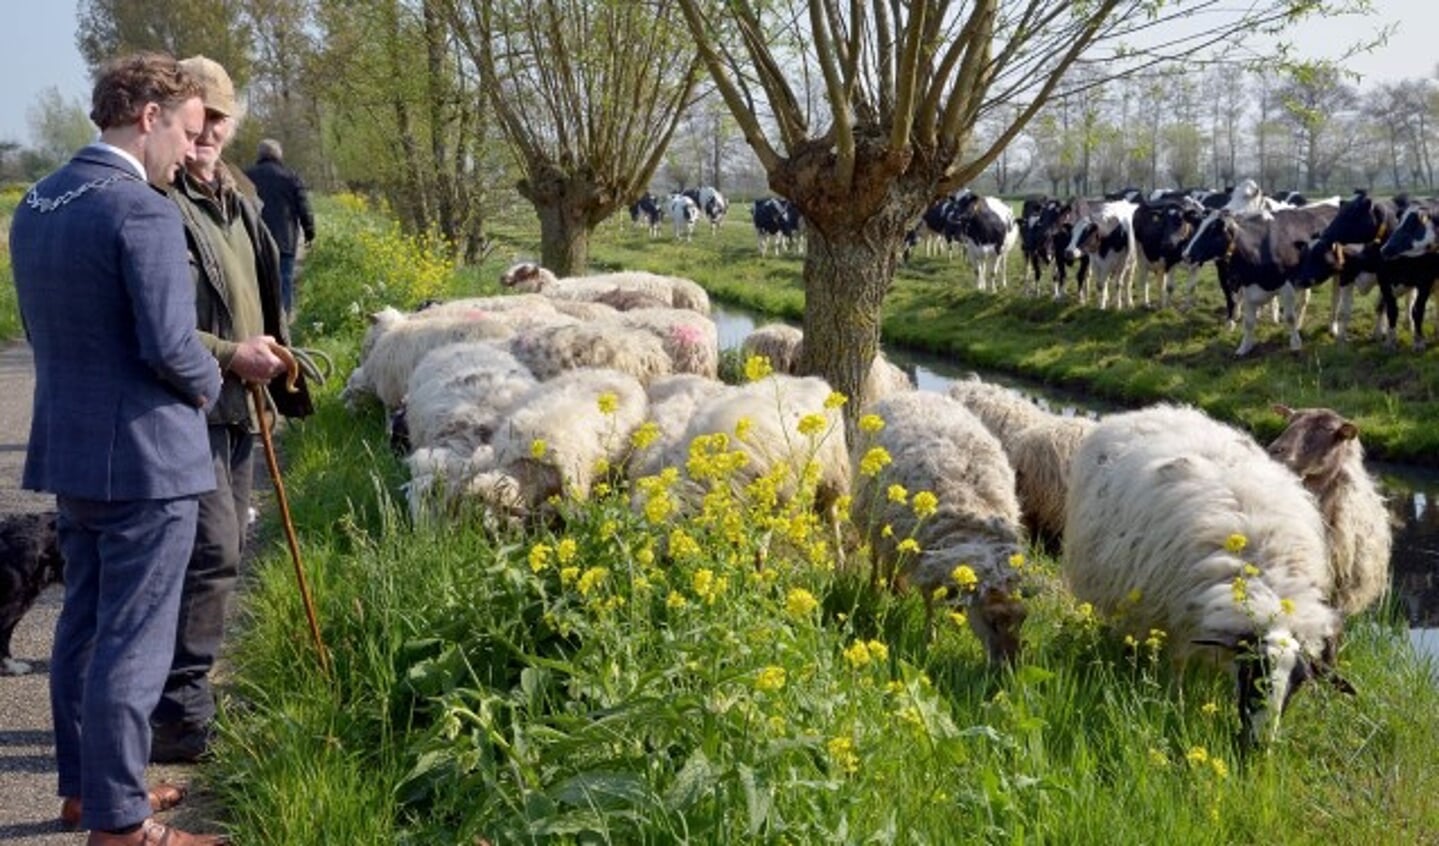 De schapen, herder Huug Hagoort en burgemeester Pieter Verhoeve worden bekeken door nieuwsgierige koeien. (Tekst en foto: Paul van den Dungen)